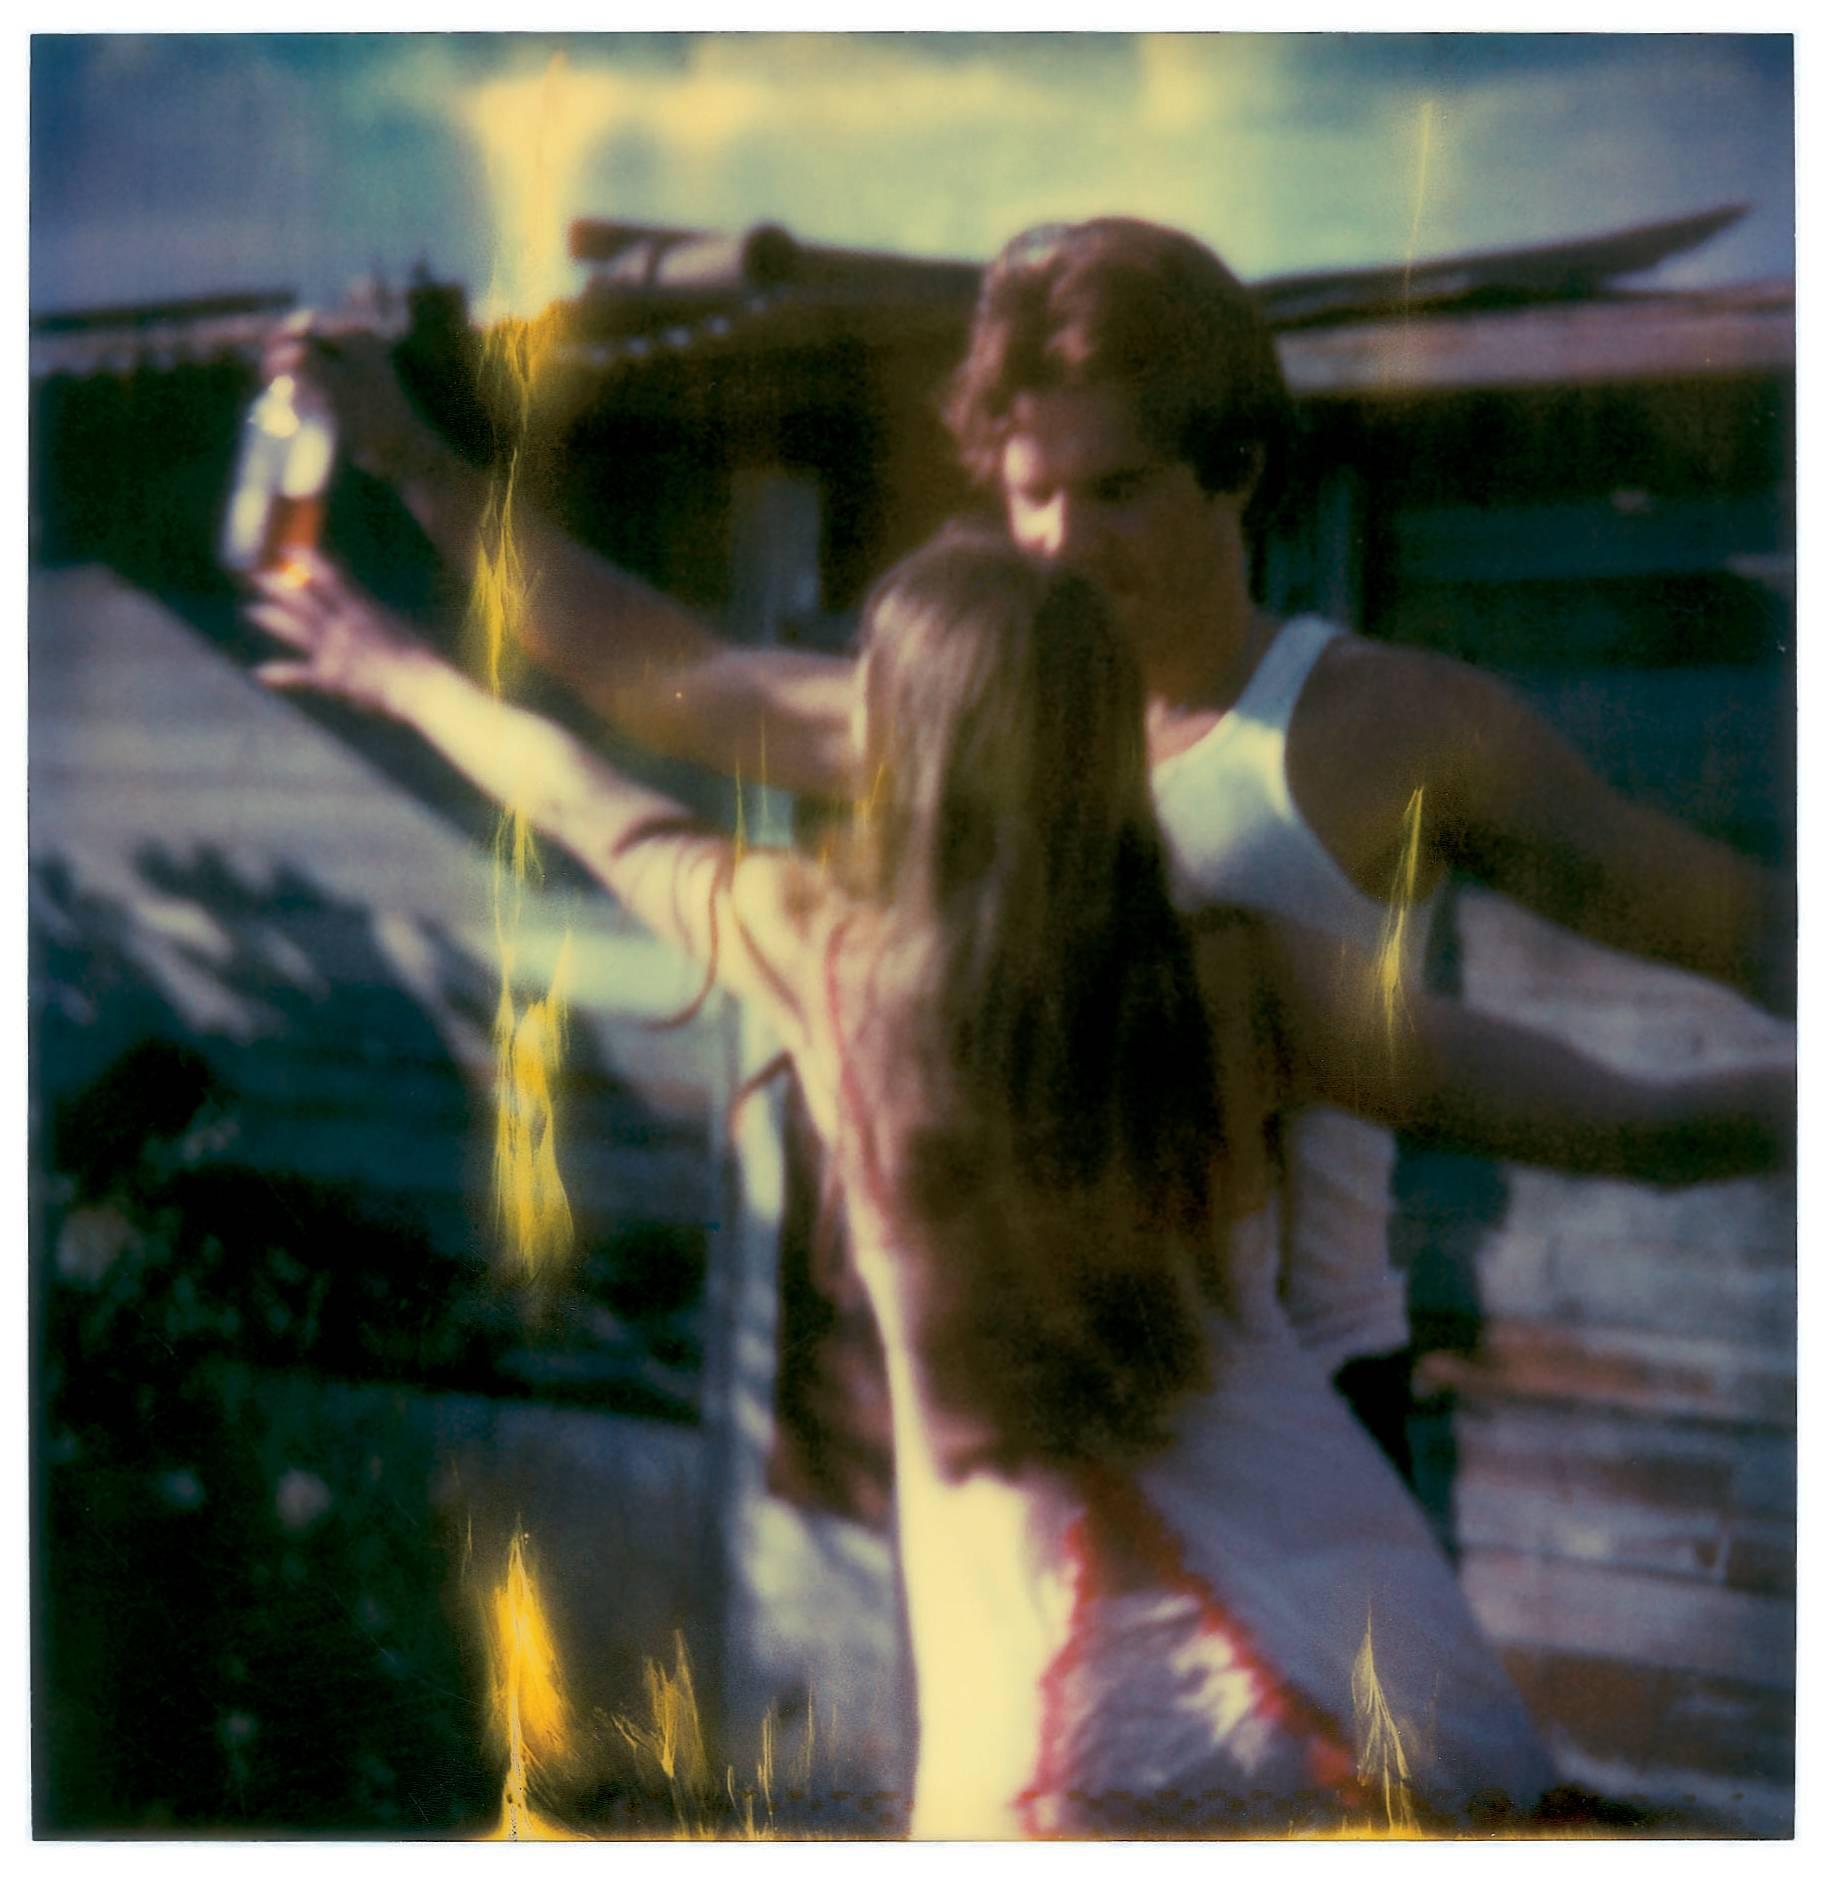 Whisky Dance I - Sidewinder - 8 pieces, analog, 82x80cm each - Black Portrait Photograph by Stefanie Schneider